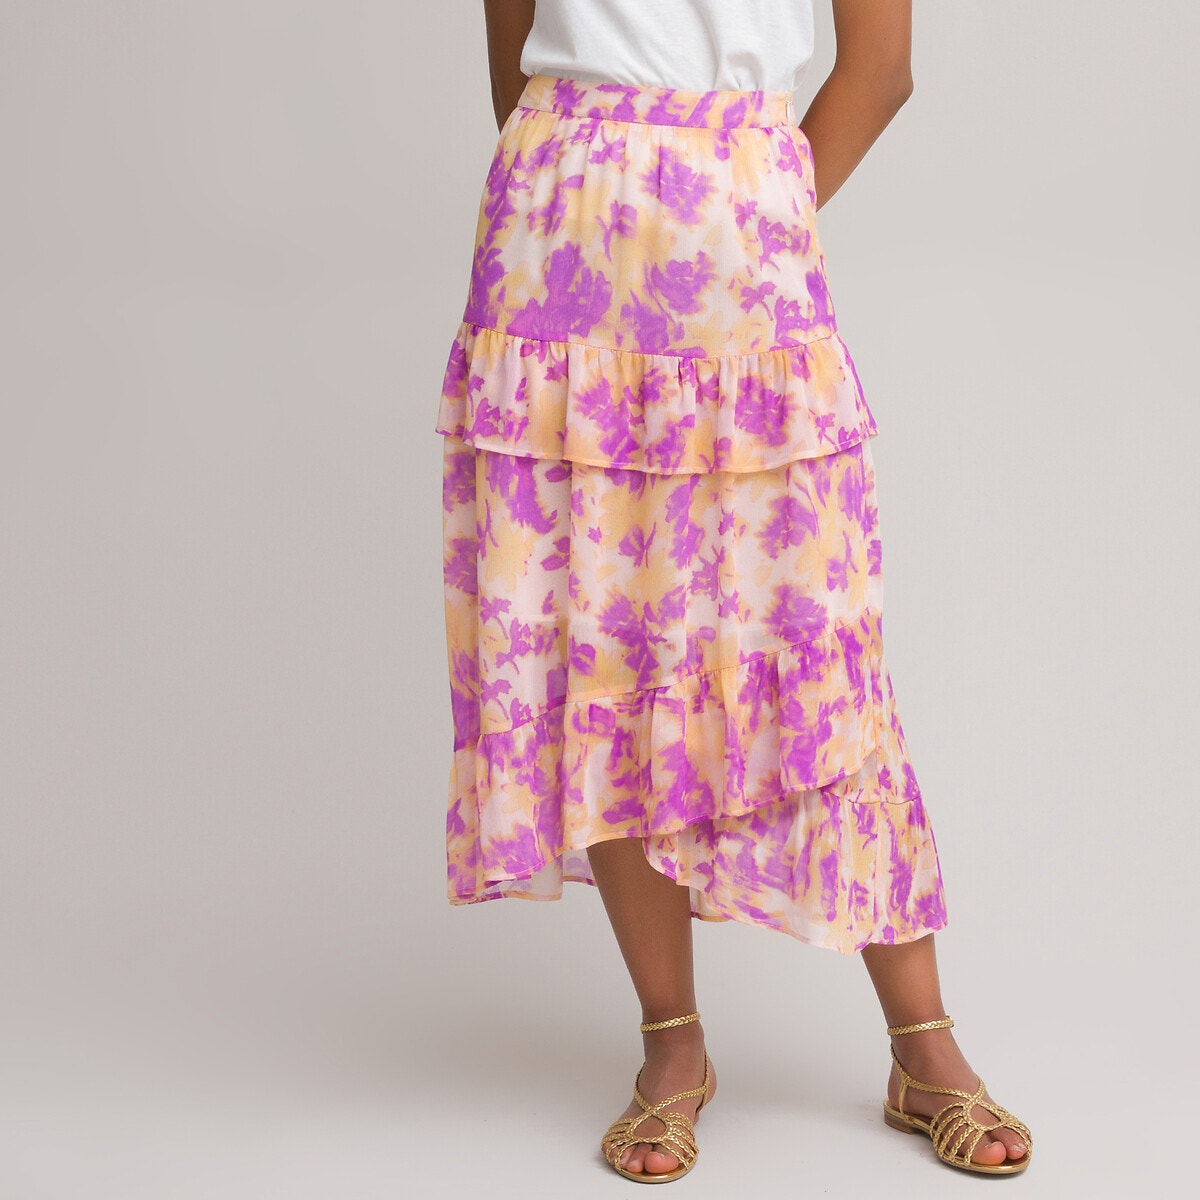 ΓΥΝΑΙΚΑ | Φούστες | Maxi Μακριά φούστα με βολάν και μοτίβο tie & dye